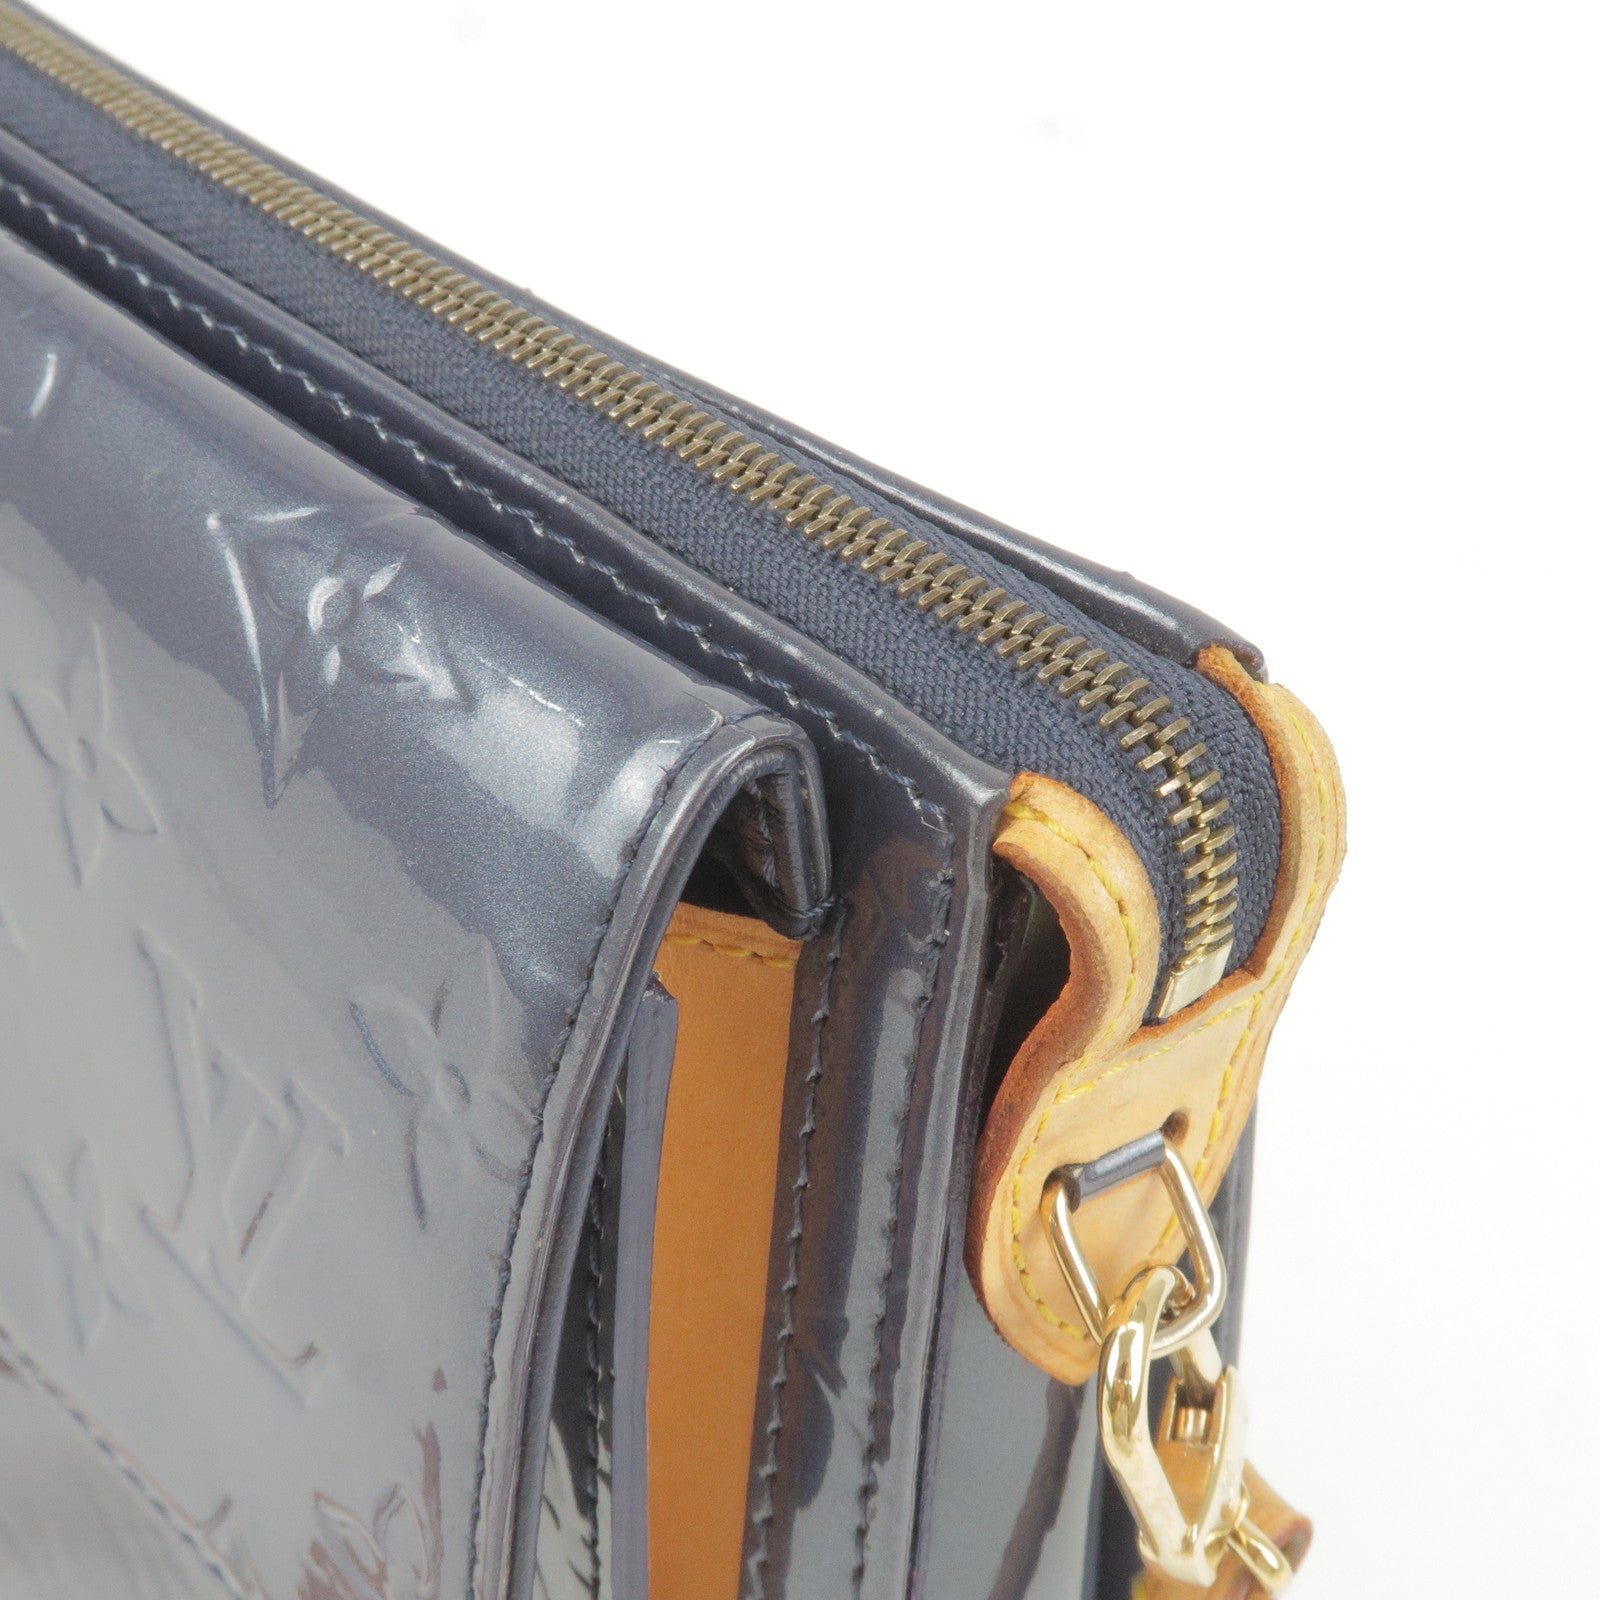 Louis Vuitton Mott Beige Vernis Leather Shoulder Bag